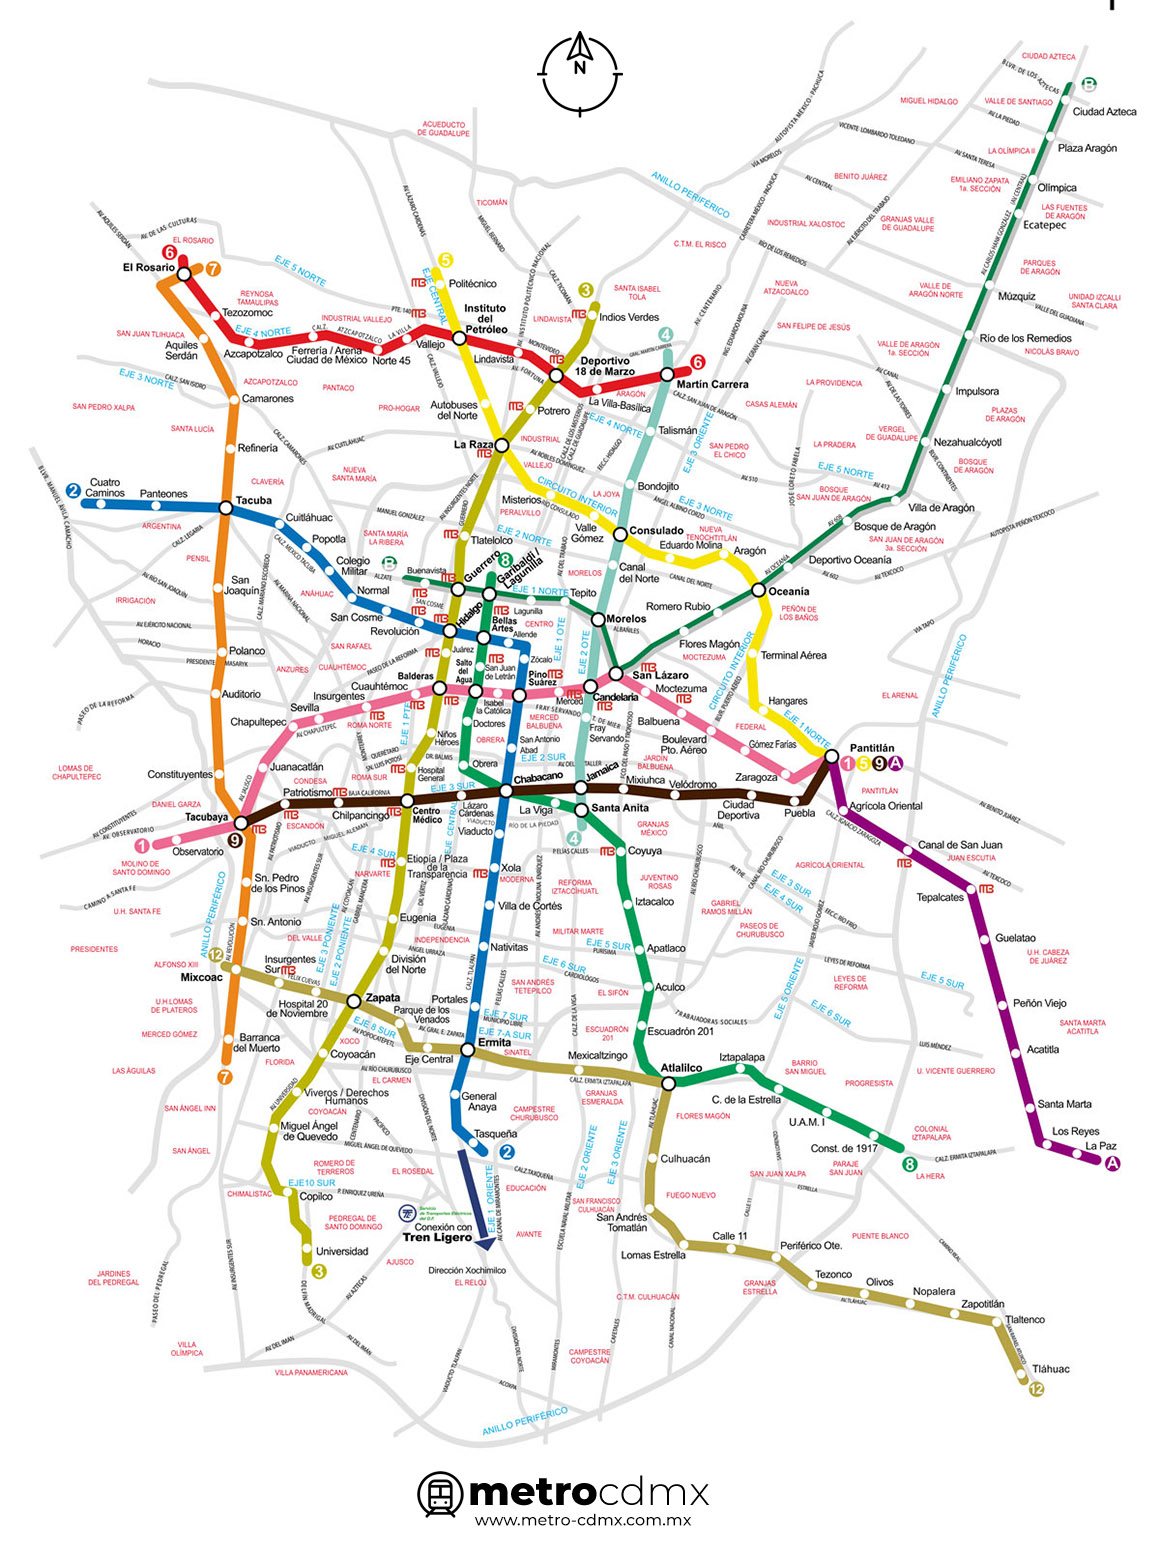 Mapa Metro CDMX con calles